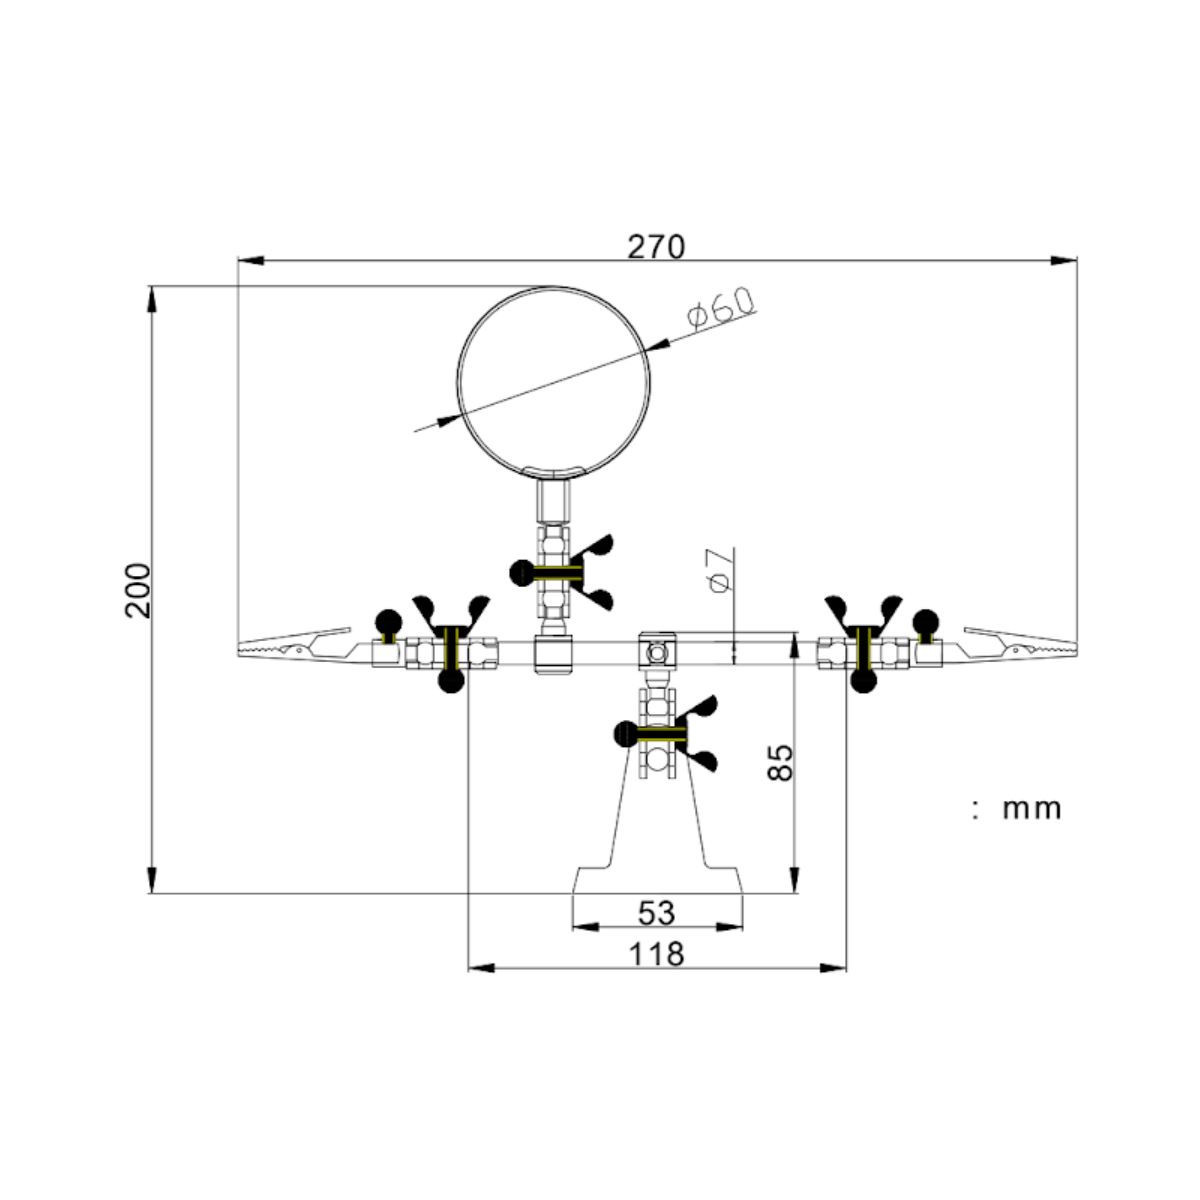 TOOLCRAFT TO-6546642 ZD-10D Handmonokular Vergrößerungsfaktor 2.5 x Linsengröße 